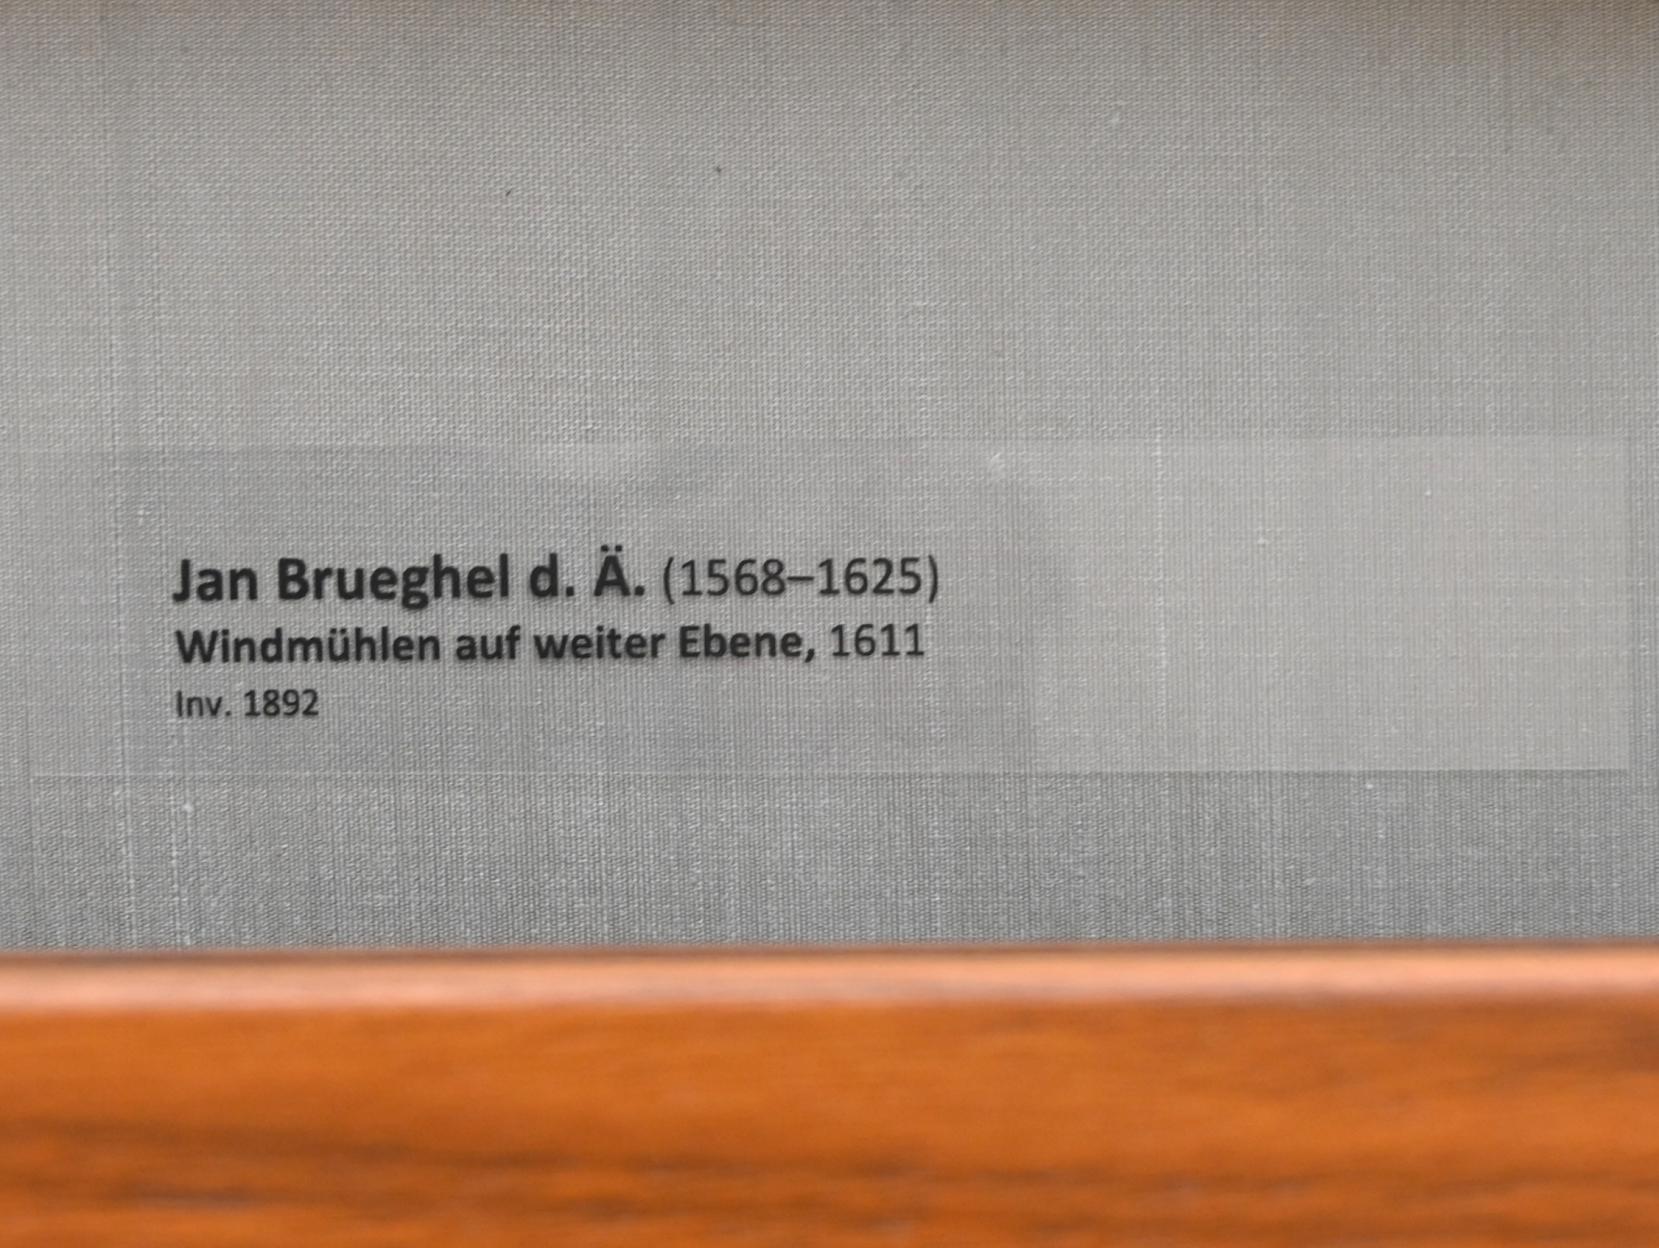 Jan Brueghel der Ältere (Samtbrueghel, Blumenbrueghel) (1593–1621), Windmühlen auf weiter Ebene, München, Alte Pinakothek, Obergeschoss Kabinett 8, 1611, Bild 2/2